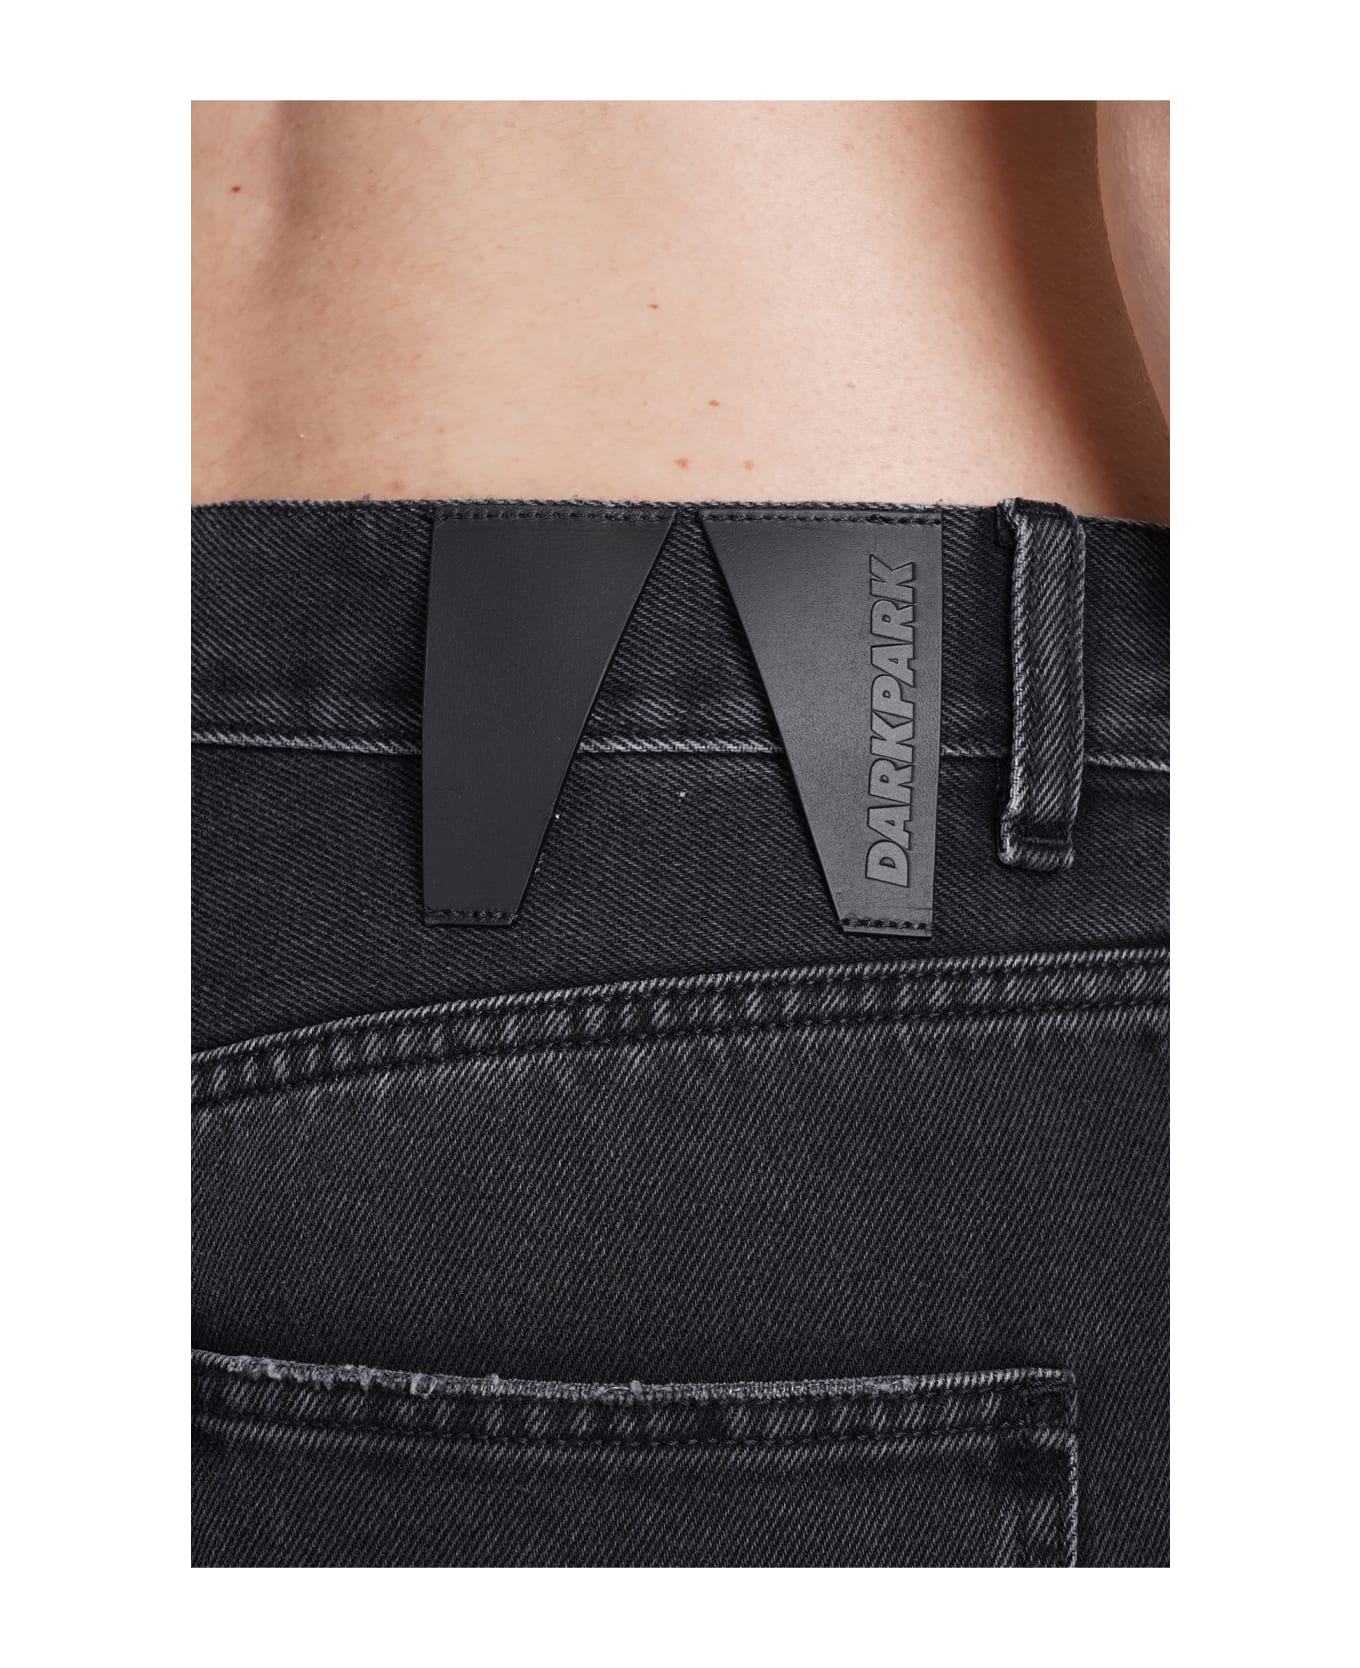 DARKPARK Lisa Jeans In Black Cotton - black